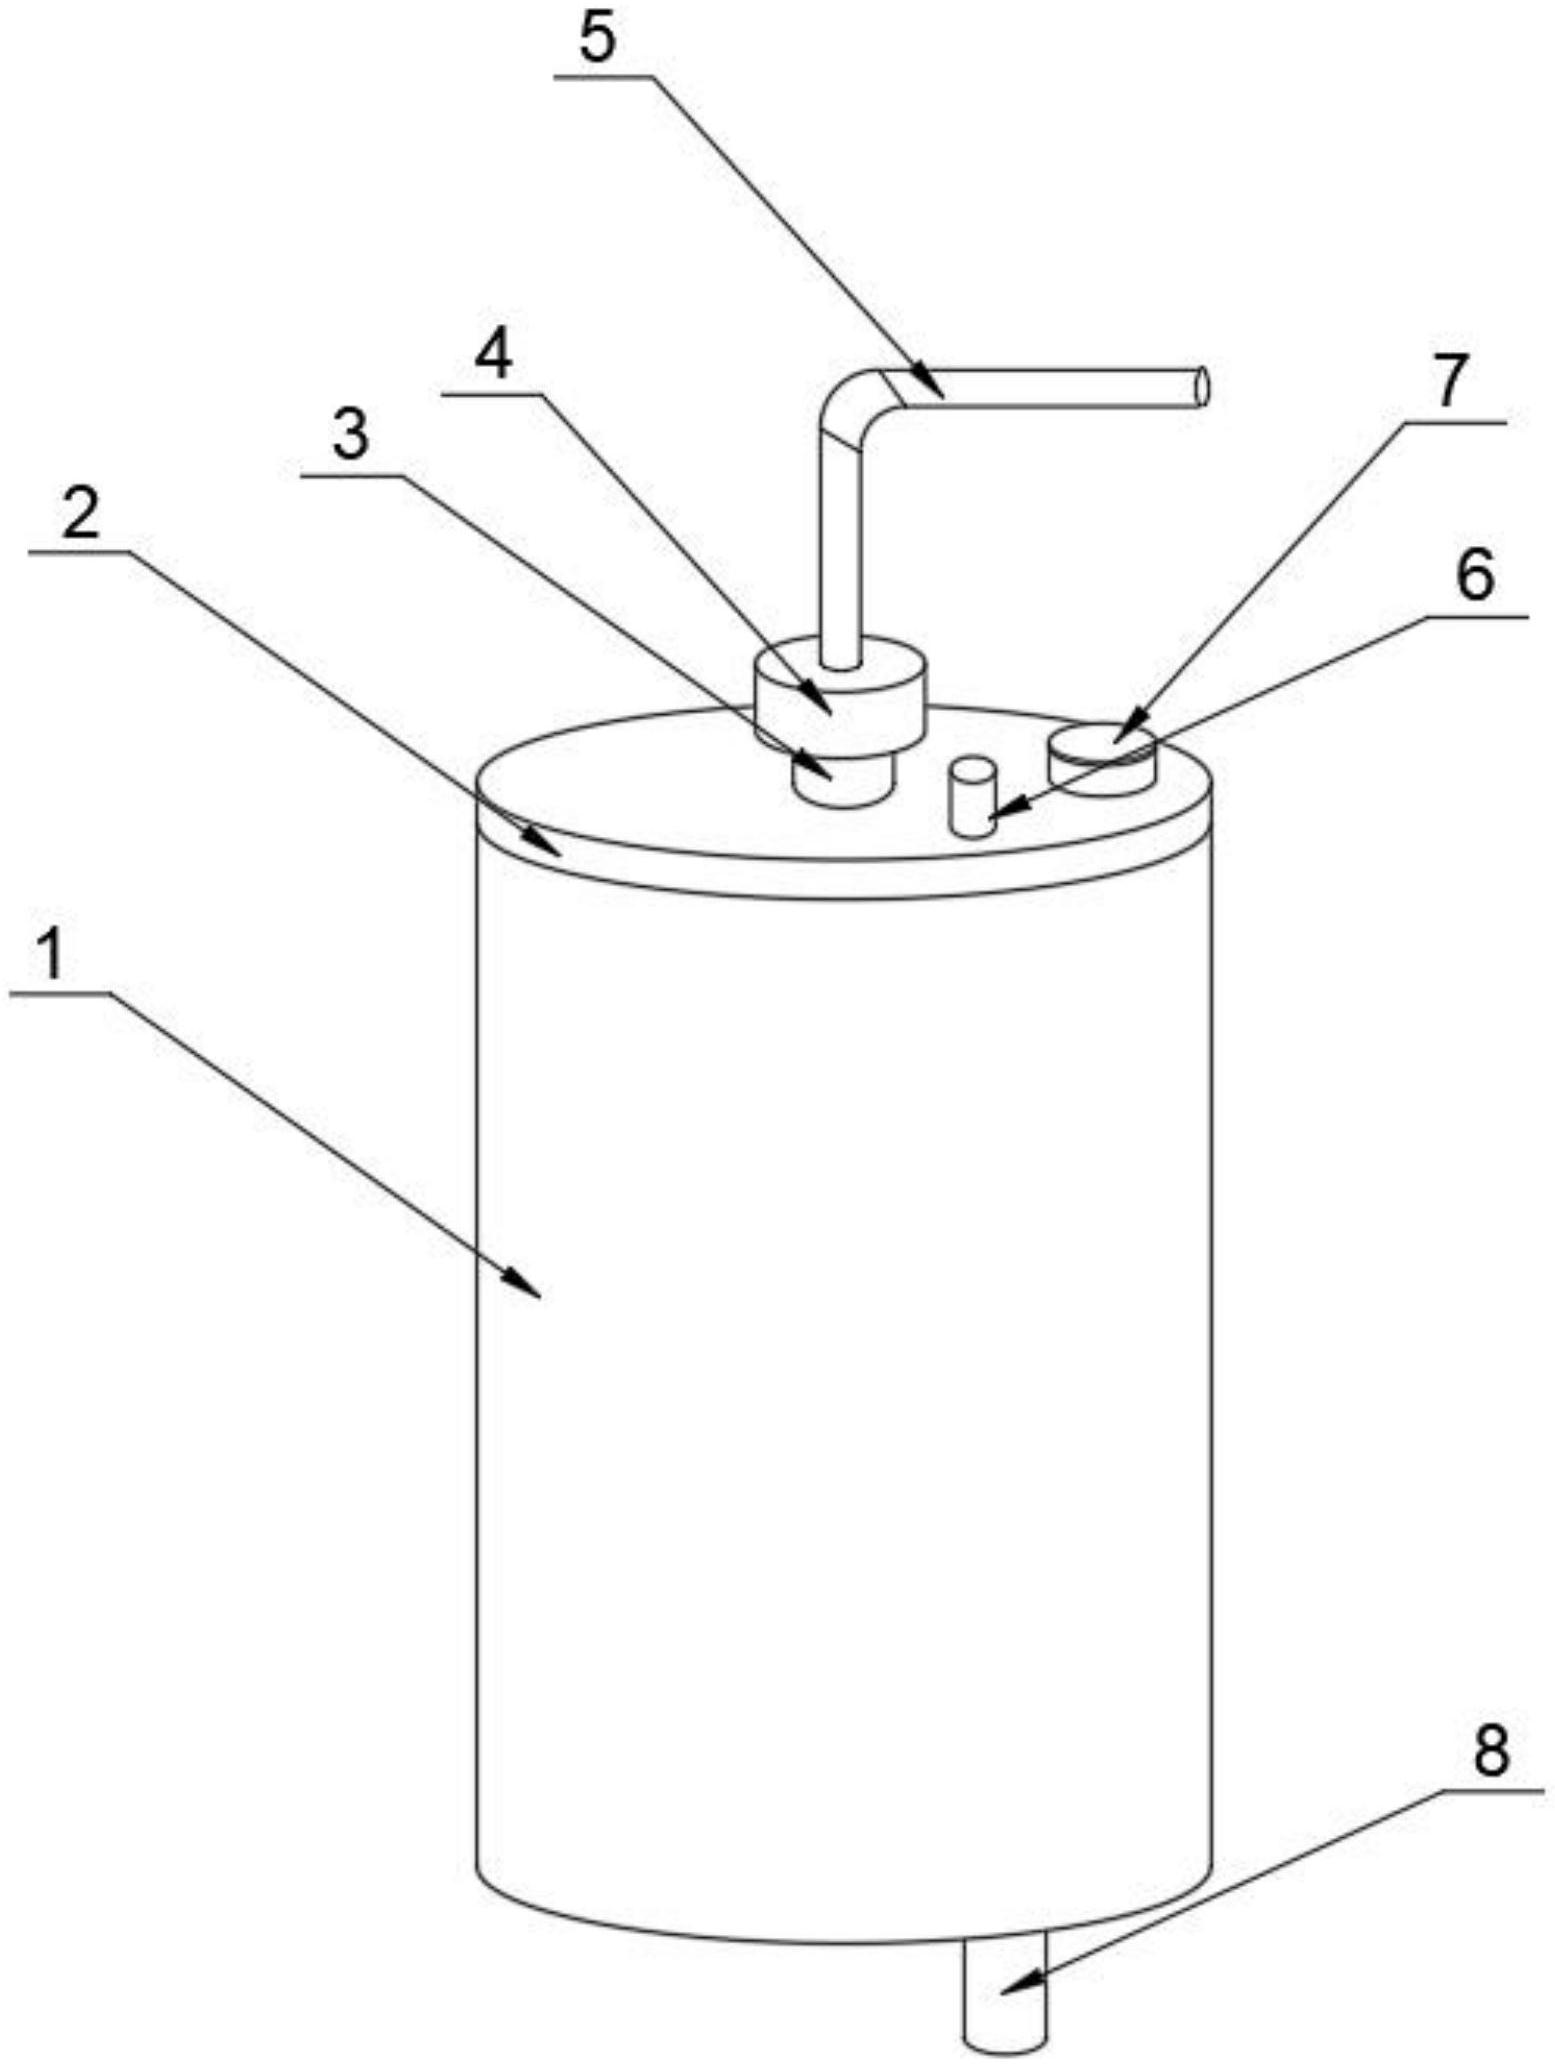 一种污水处理罐专利图